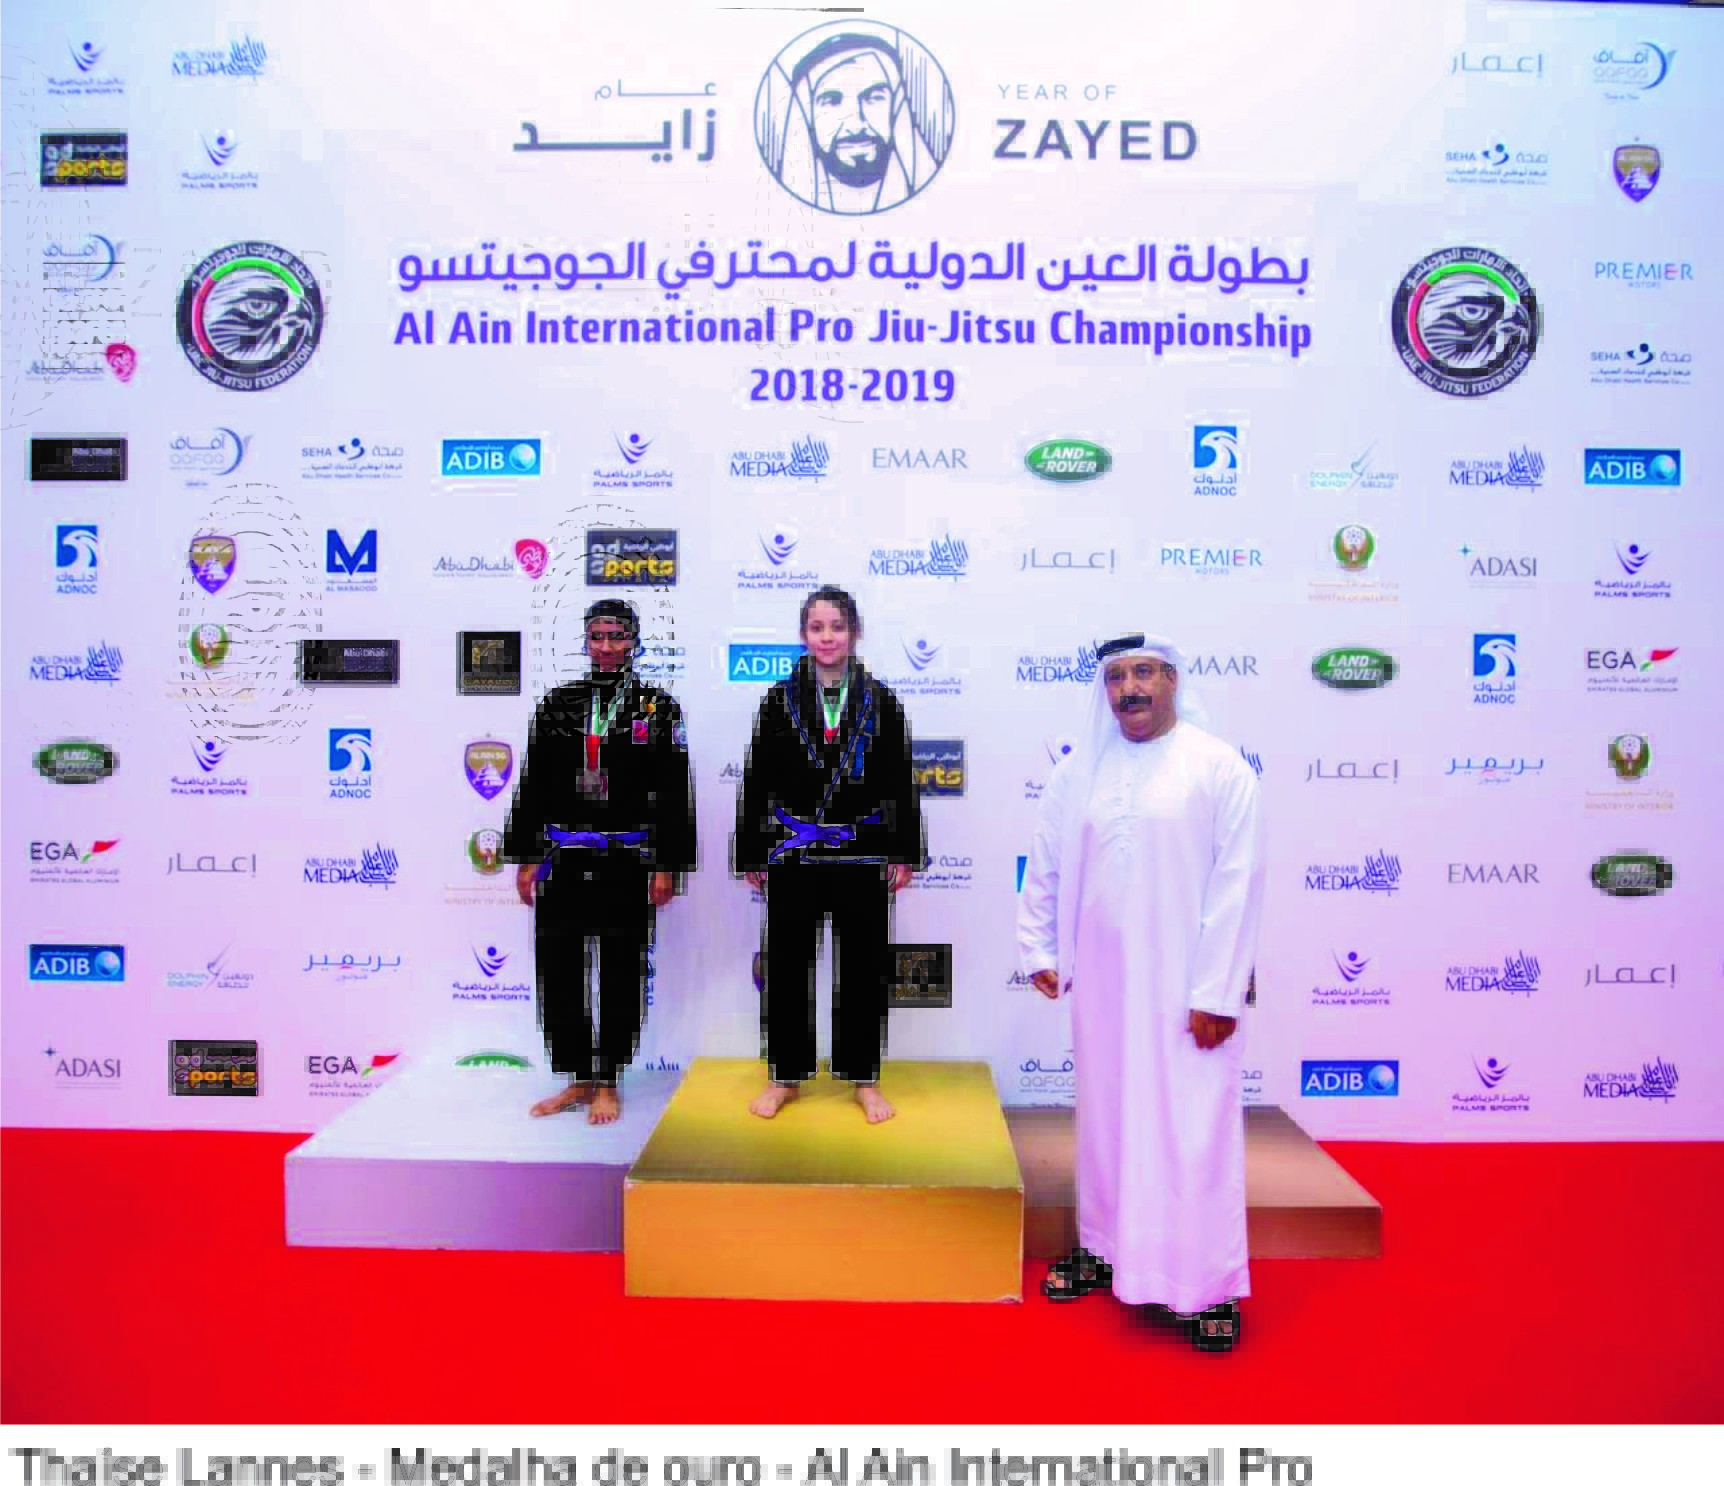 Atleta caratinguense de jiu-jitsu brilha nos Emirados Árabes Unidos